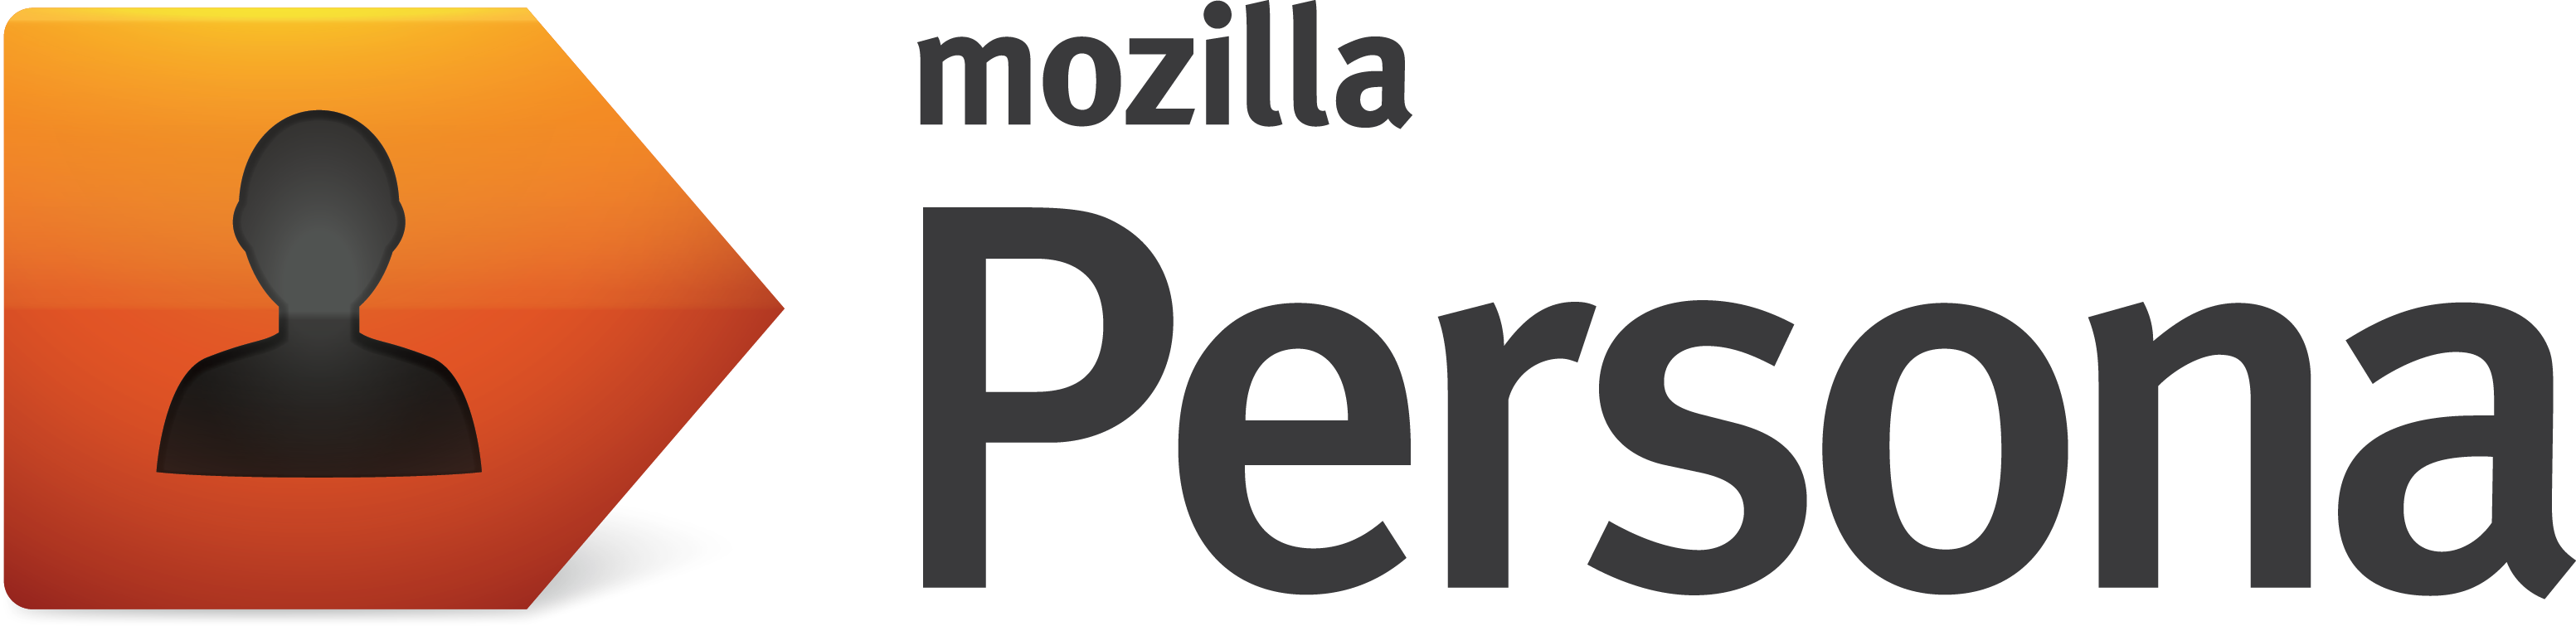 Mozilla Persona